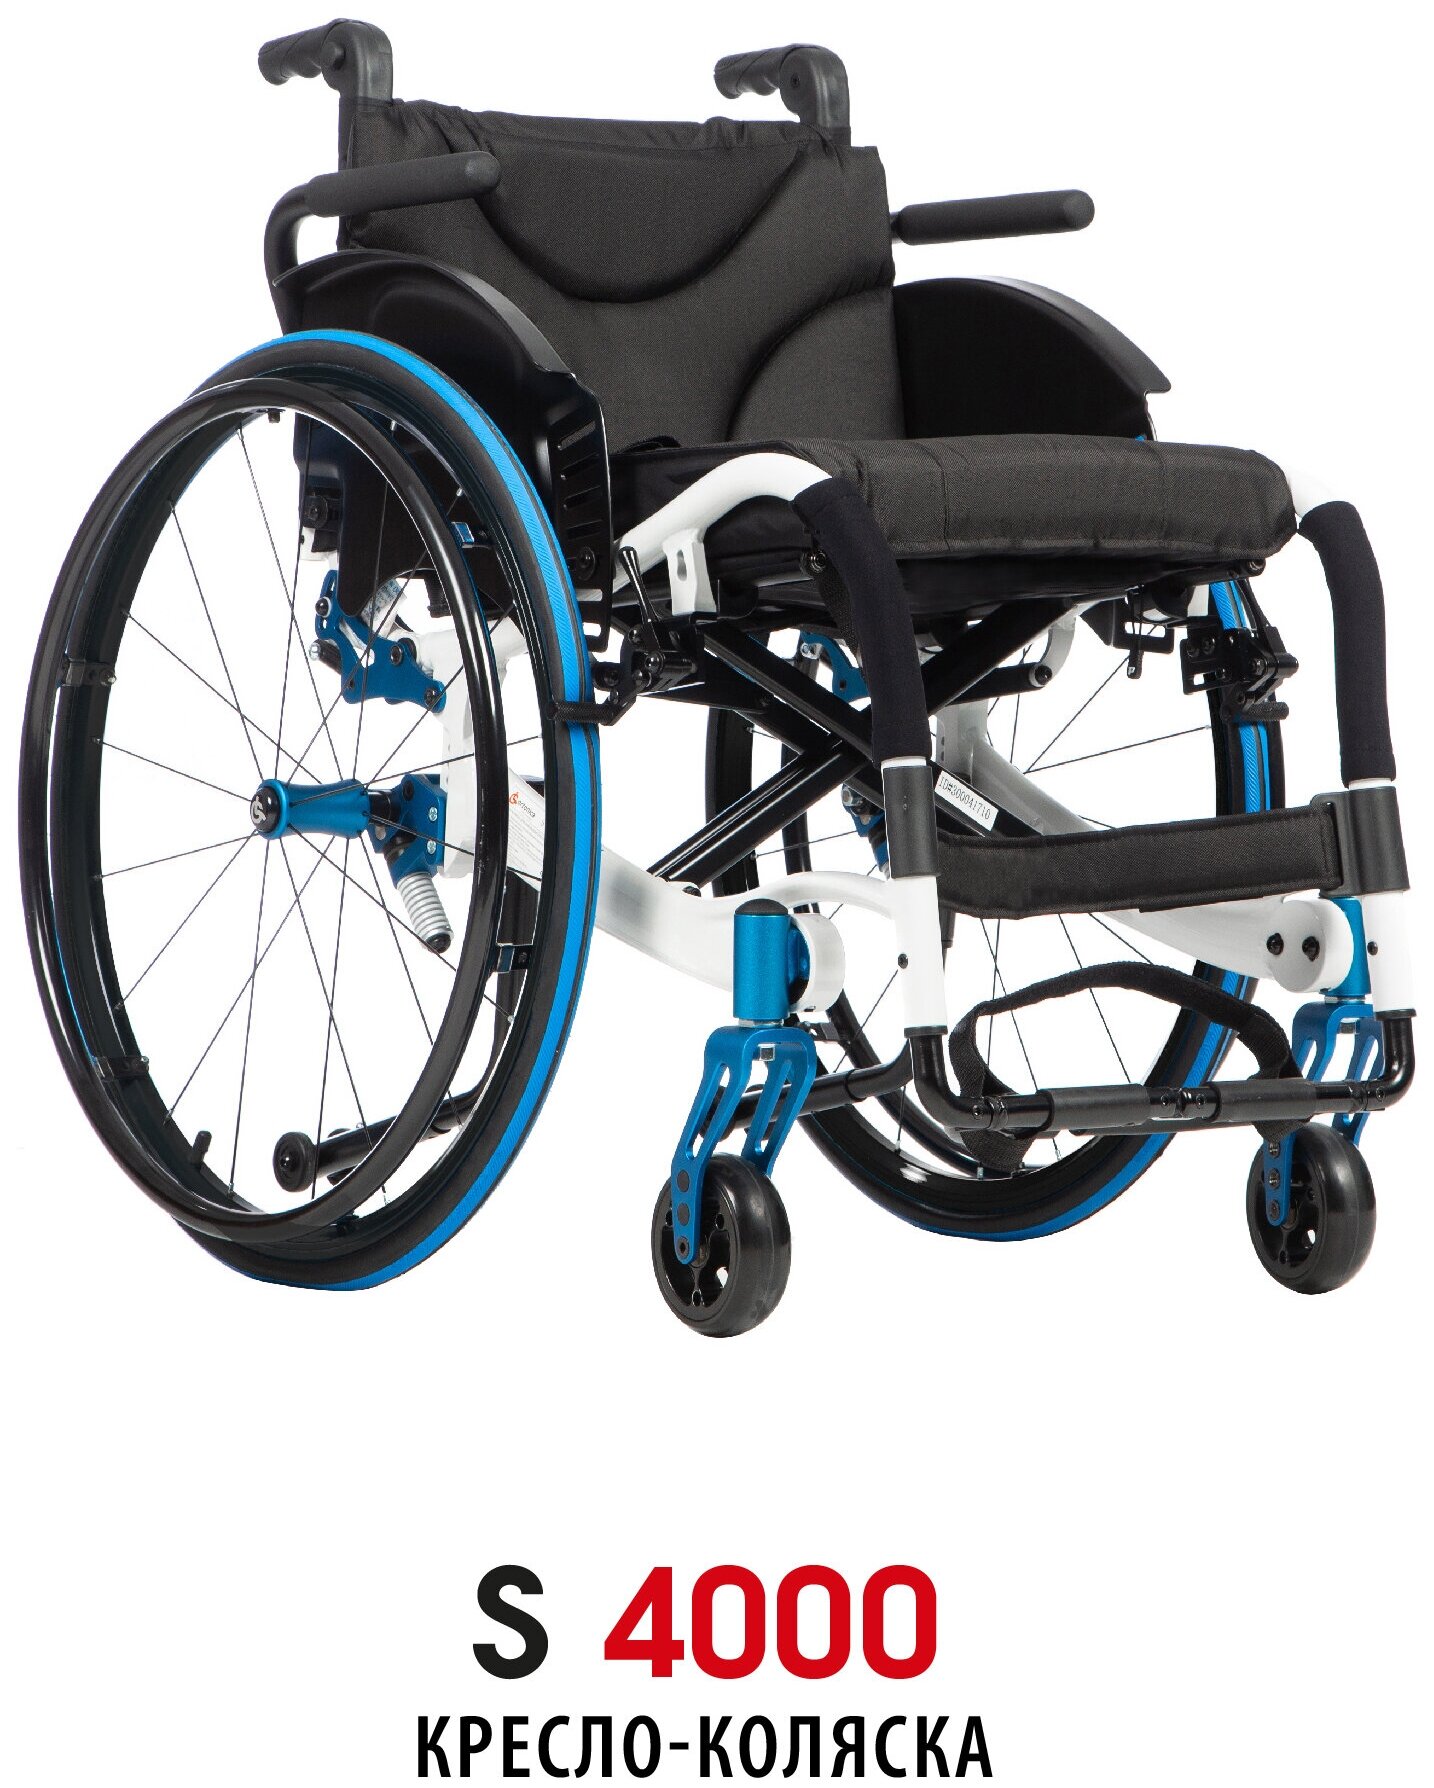 Активное кресло-коляска для инвалидов Ortonica S 4000 41PU складное легкое с регулировкой спинки и колес ширина сиденья 41 см литые/пневматические Код 07-03-01